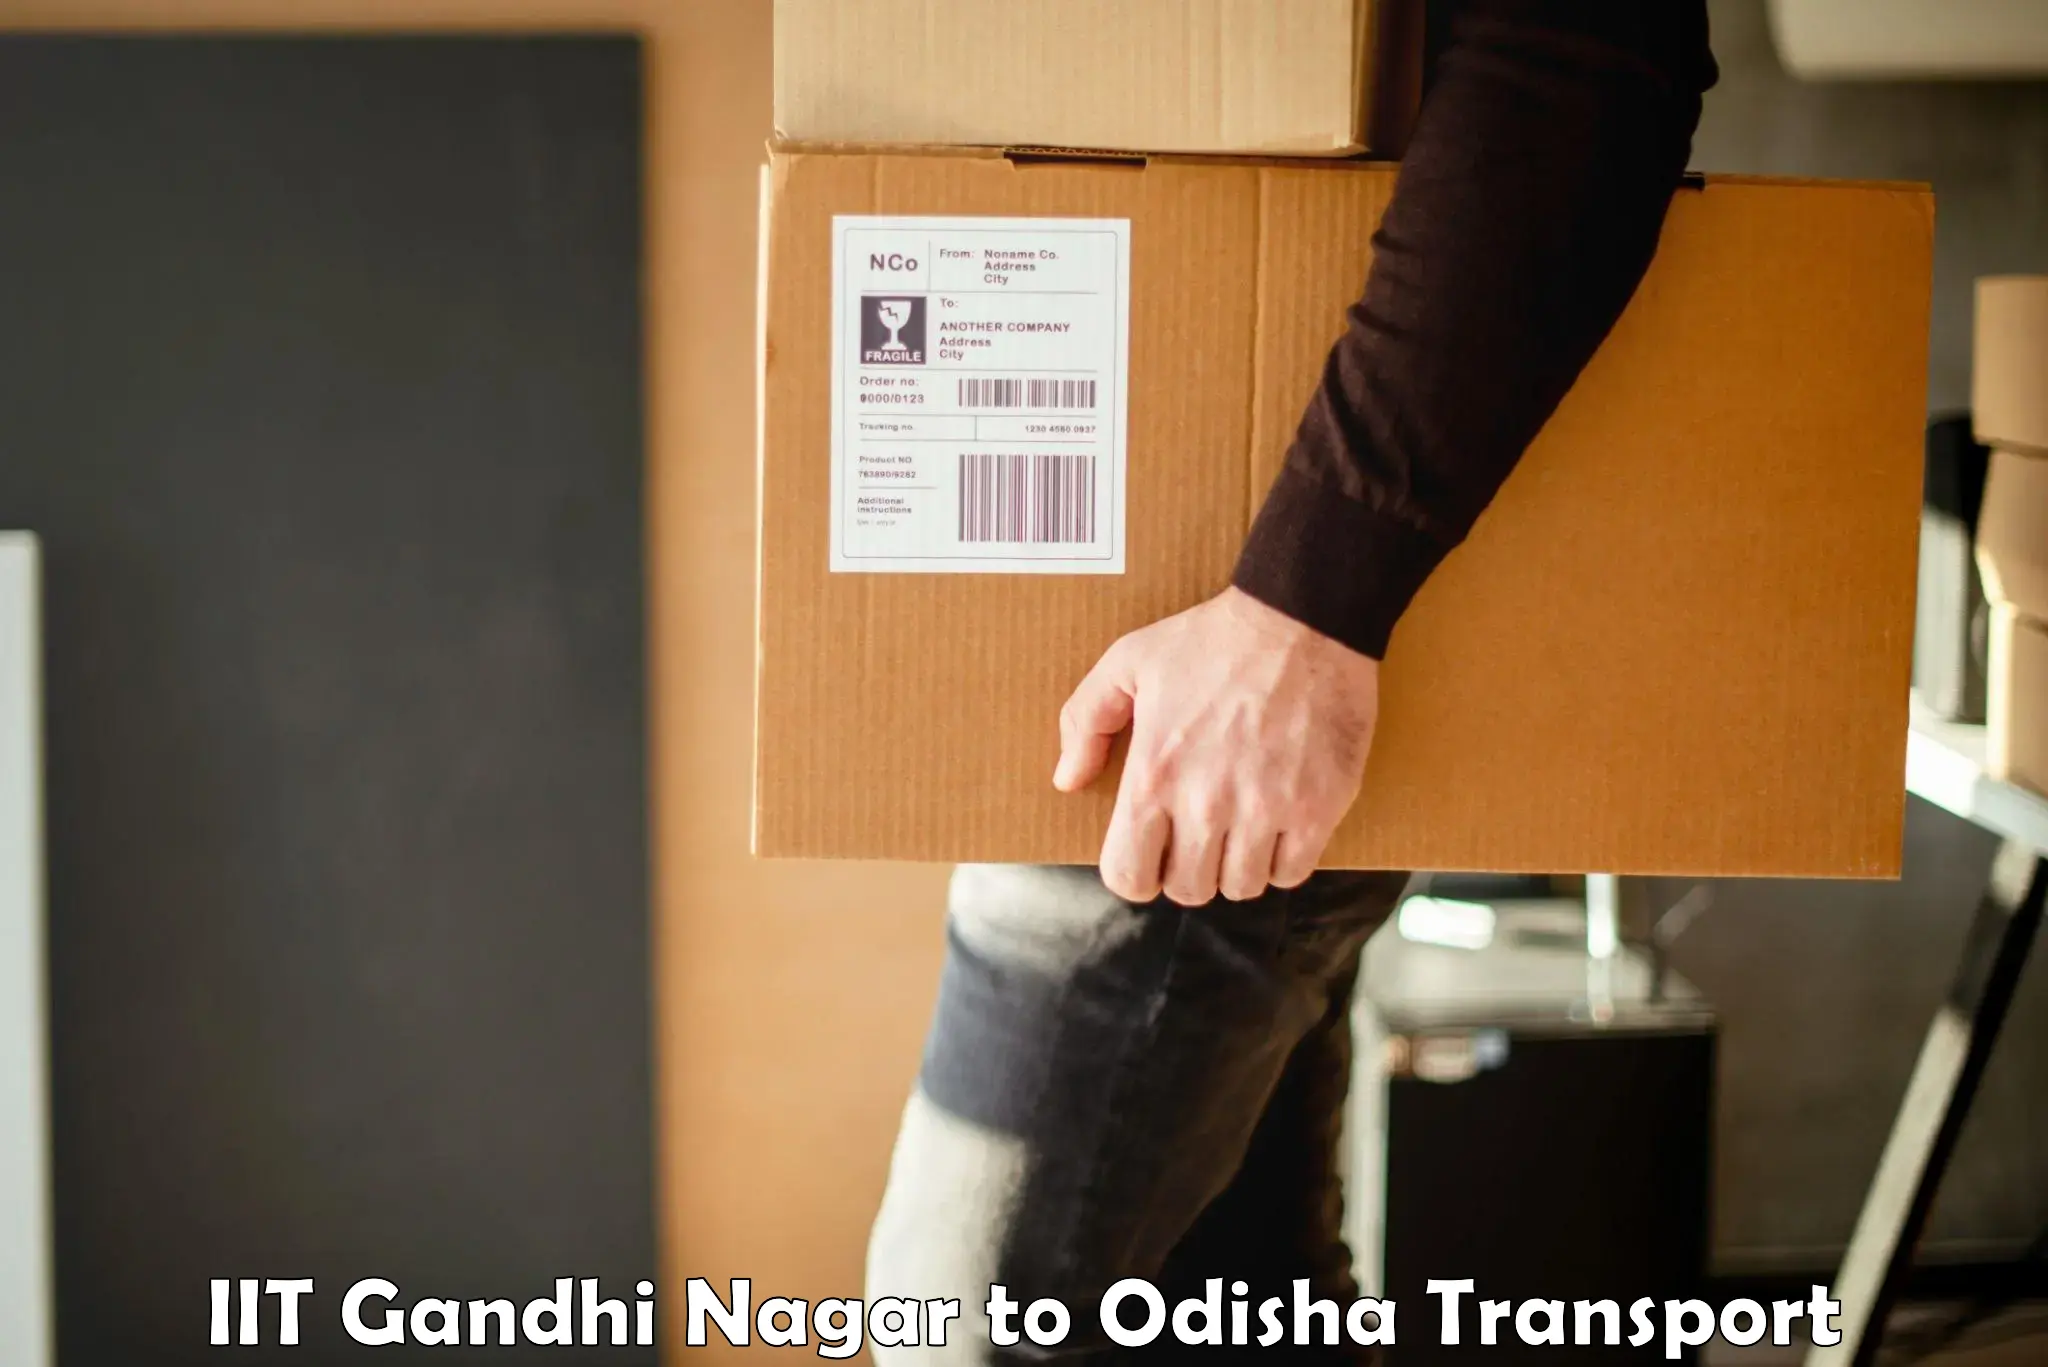 Furniture transport service IIT Gandhi Nagar to Nabarangpur